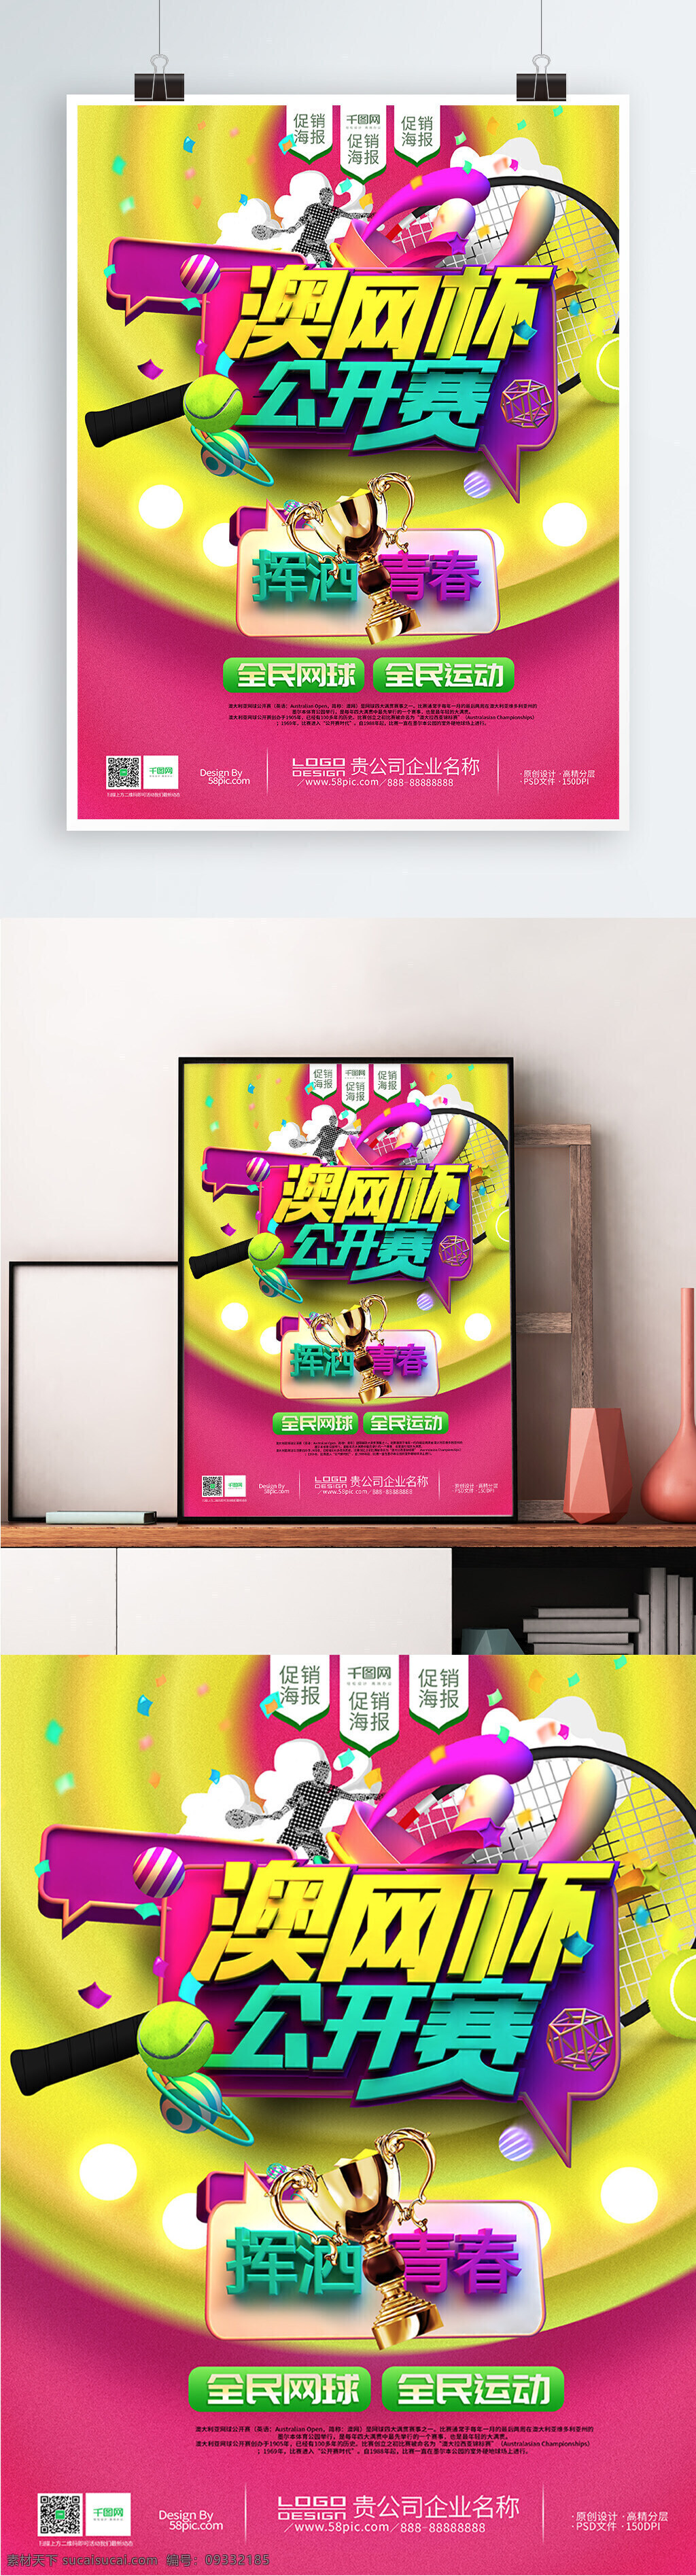 2018 澳网 公开赛 开幕 宣传海报 立体 创意 澳网公开赛 粉色 黄色